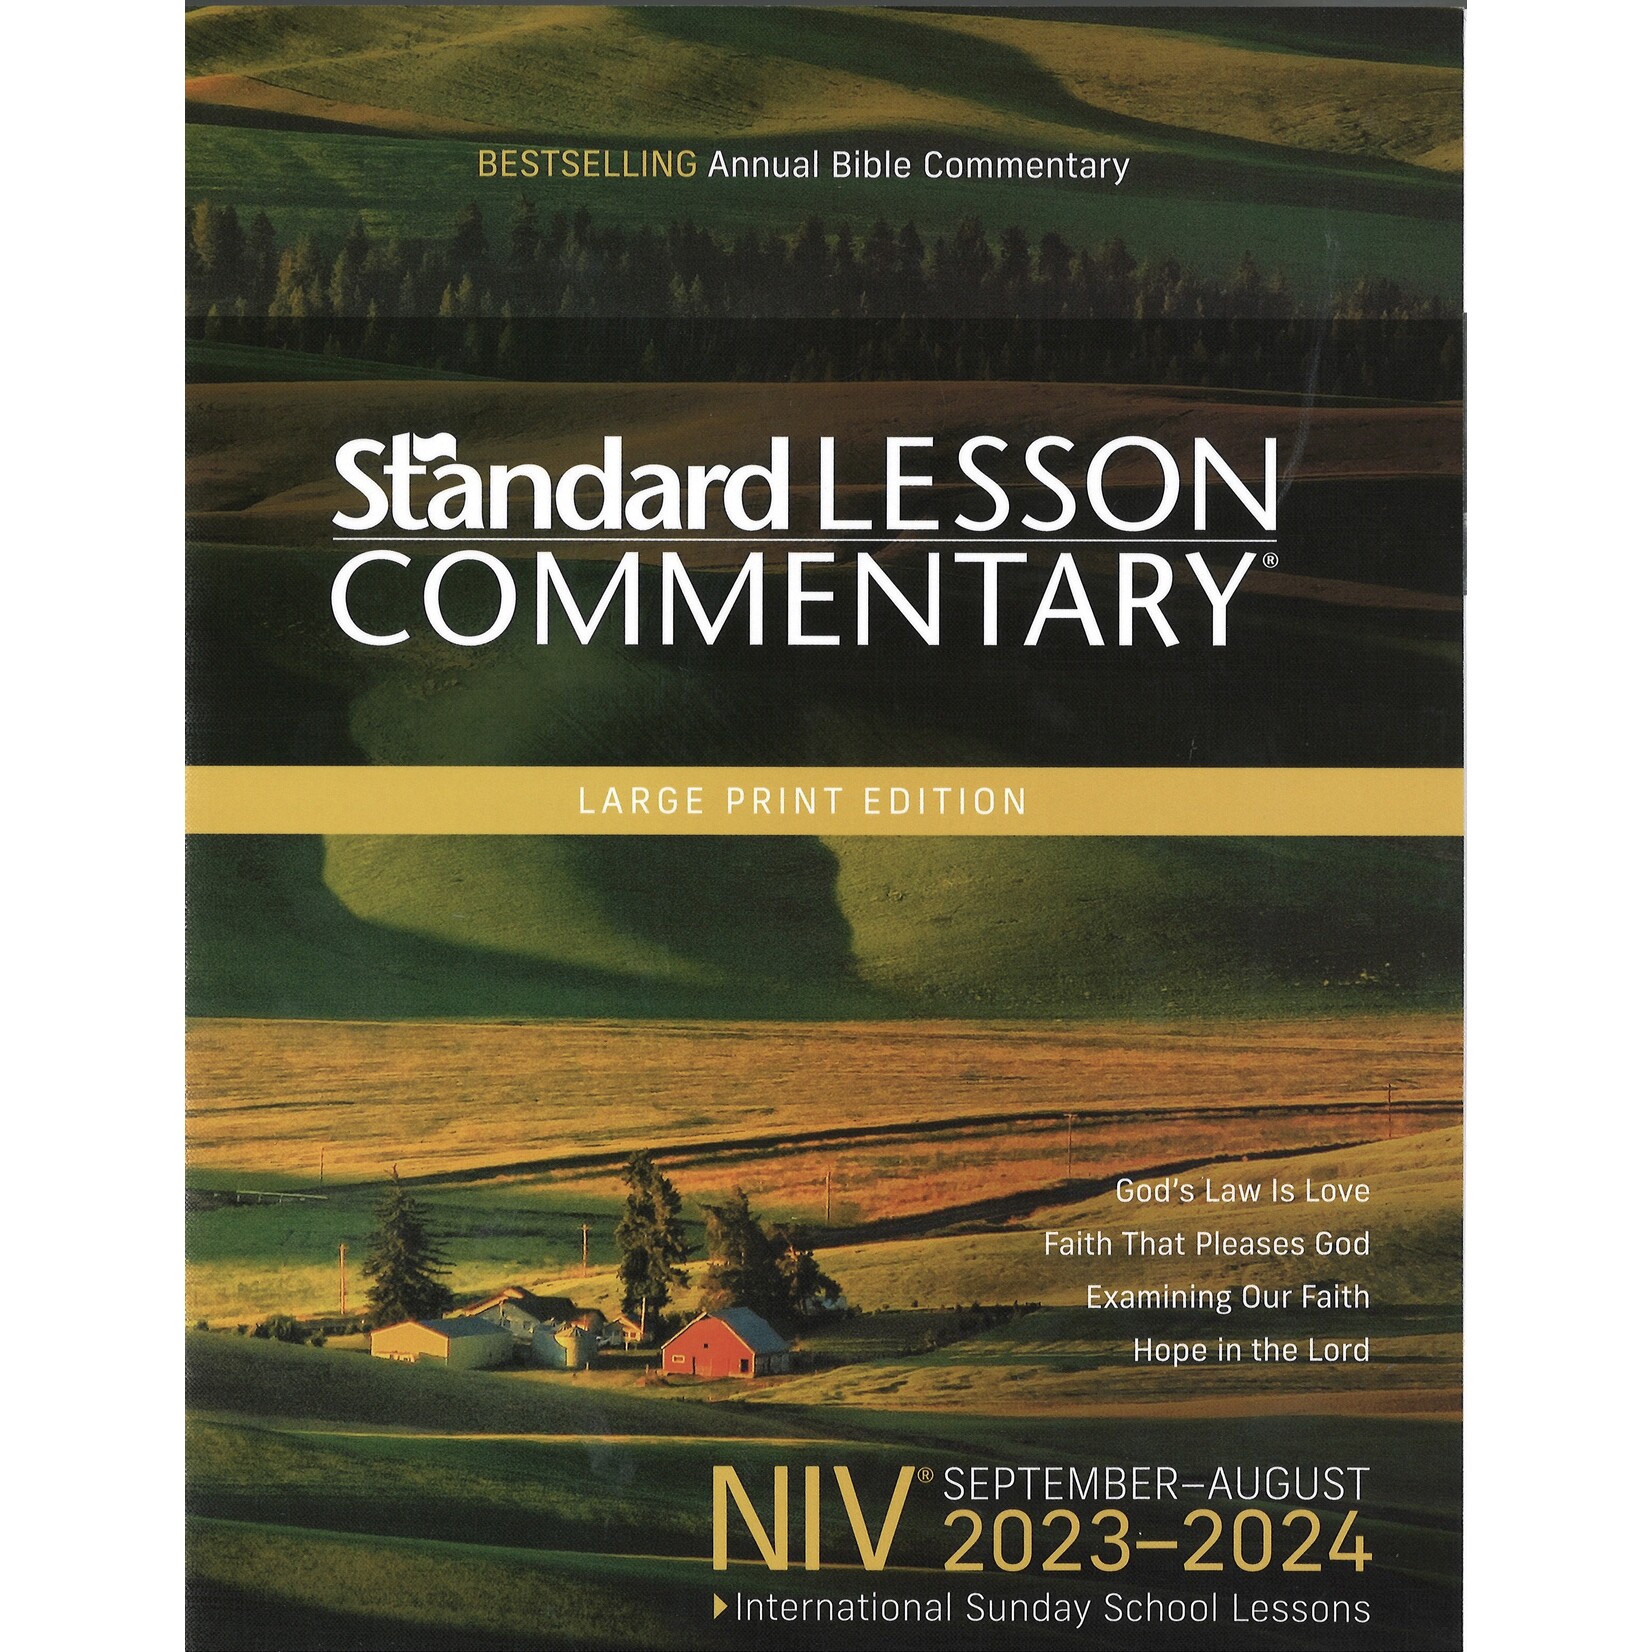 NIV 2023-2024 STANDARD LESSON COMMENTARY LG PRINT